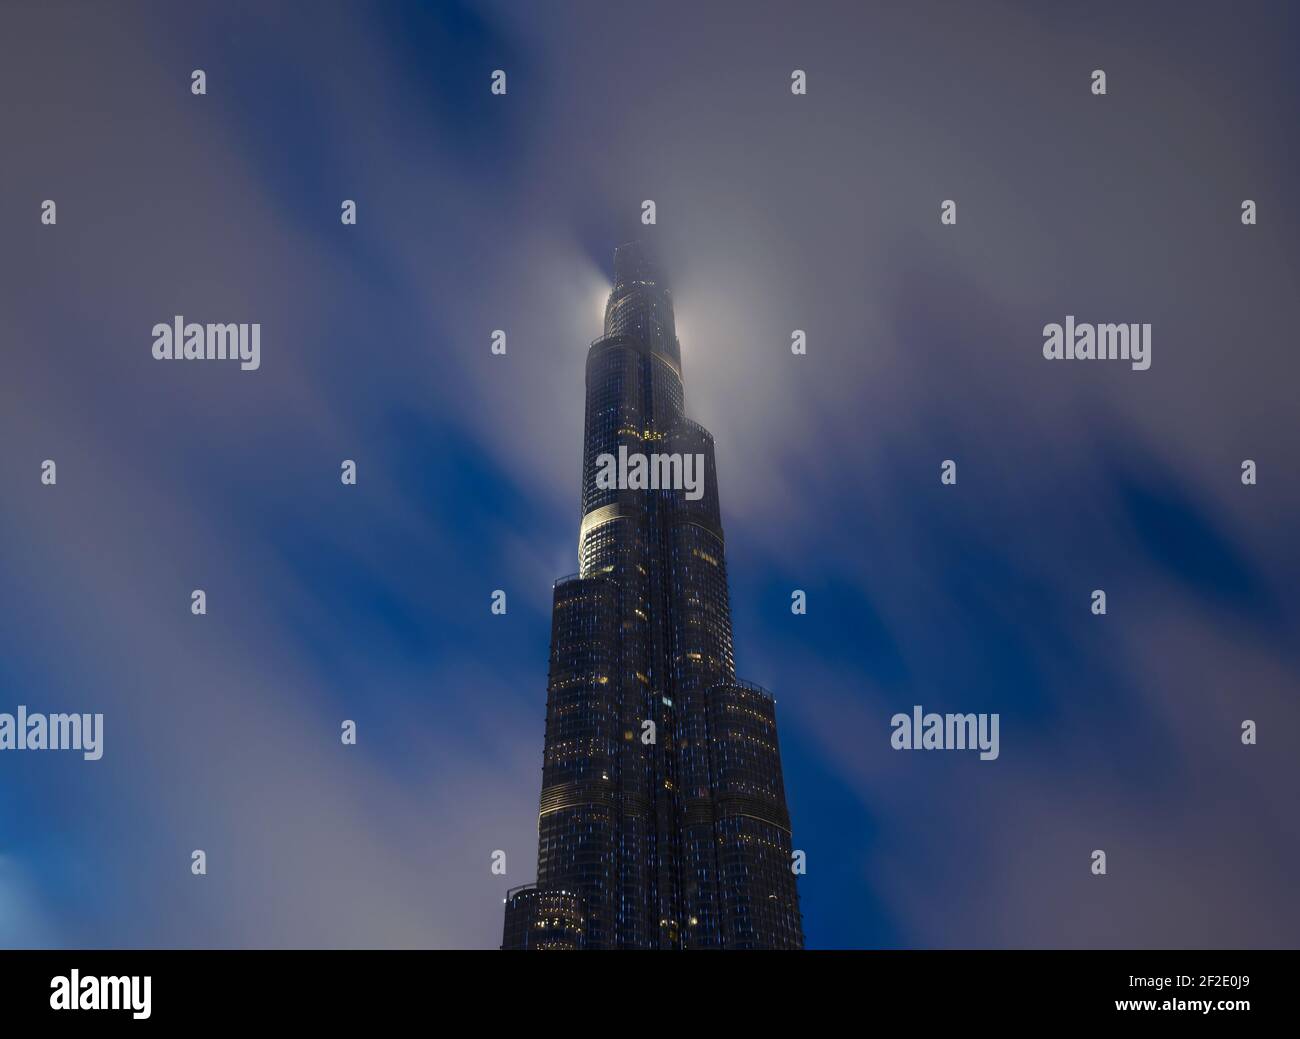 Burj Khalifa por la noche con la parte superior cubierta por nubes bajas. Rascacielos en Dubai, Emiratos Árabes Unidos. La cima de gran altura detrás de la nube. Foto de stock